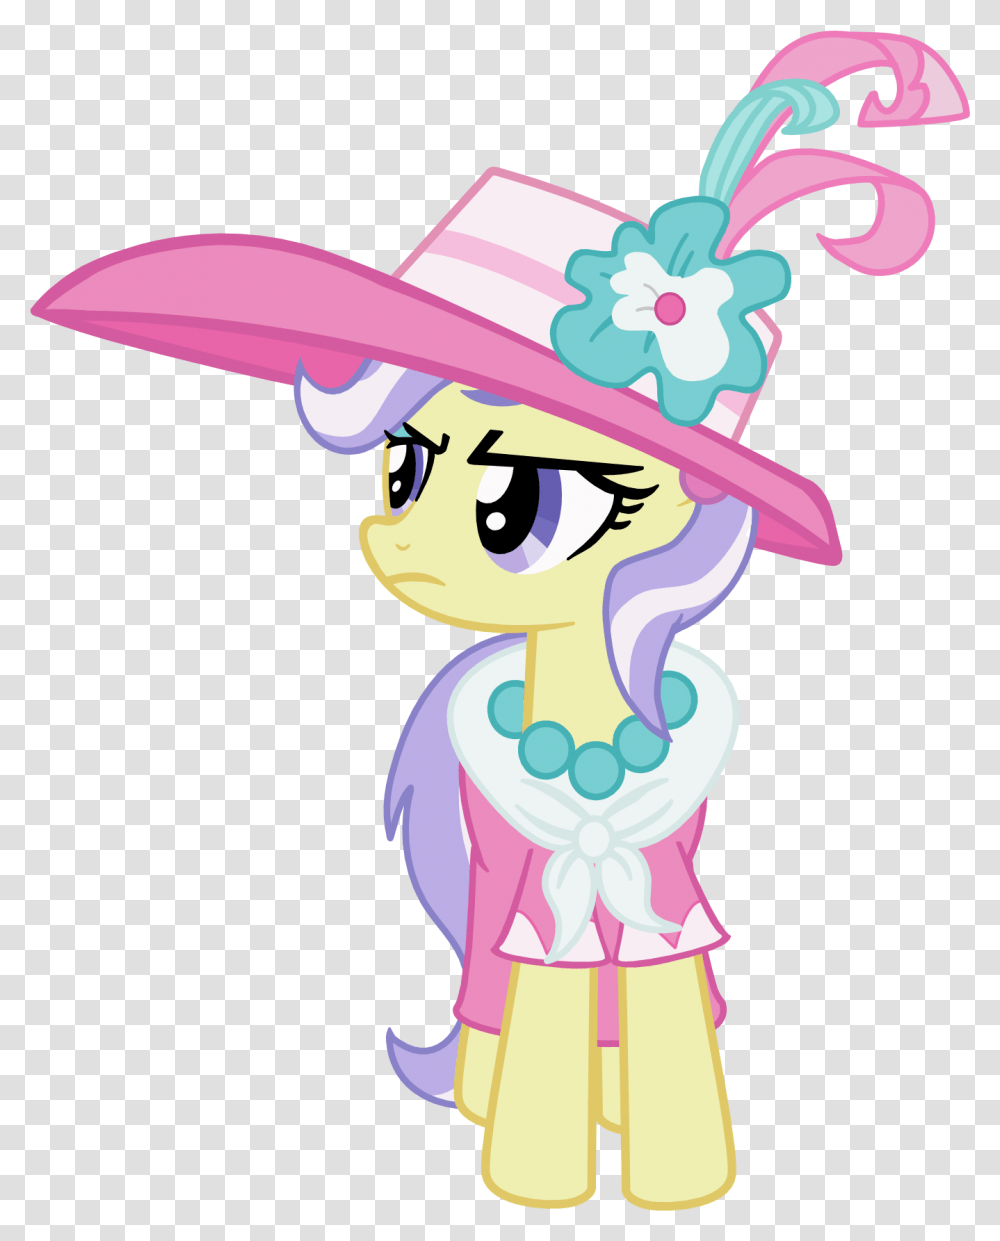 Mlp Canterlot Ponies Vector, Apparel, Hat, Sombrero Transparent Png